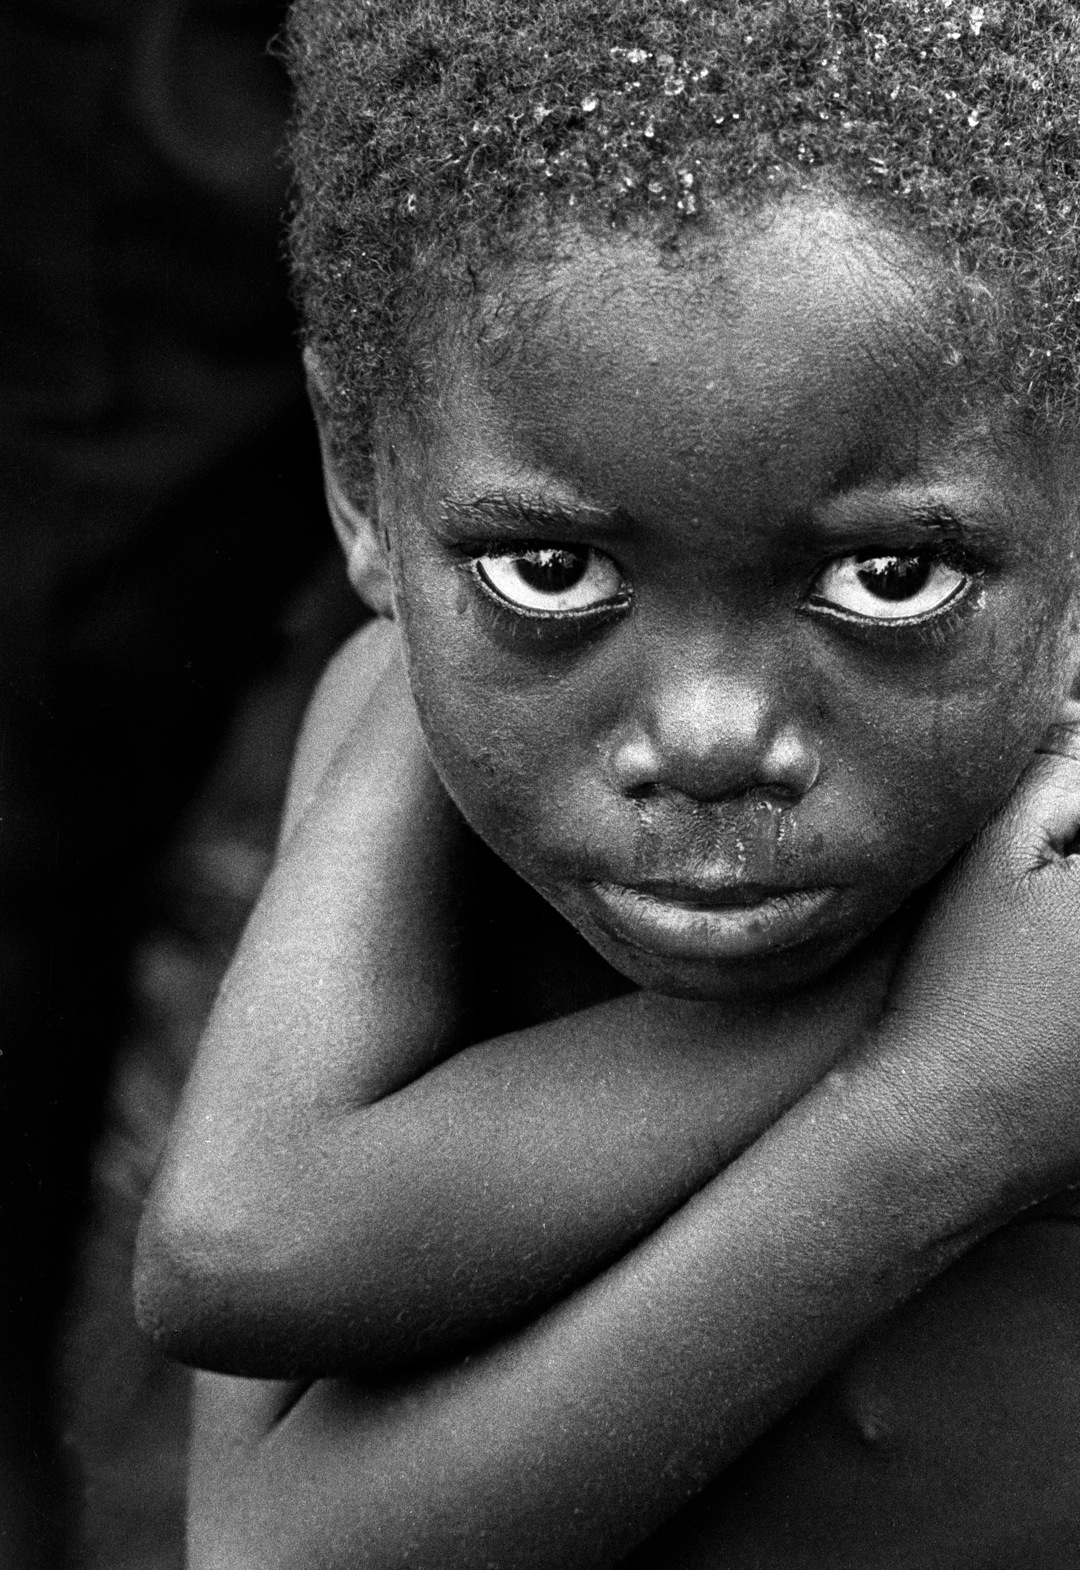 Le paludisme est une maladie qui affecte très majoritairement l'Afrique subsaharienne. Les enfants sont d'ailleurs les principales victimes, lorsqu'ils ne peuvent pas bénéficier de soins. © Daveblume, Fotopédia, cc by nc nd 2.0